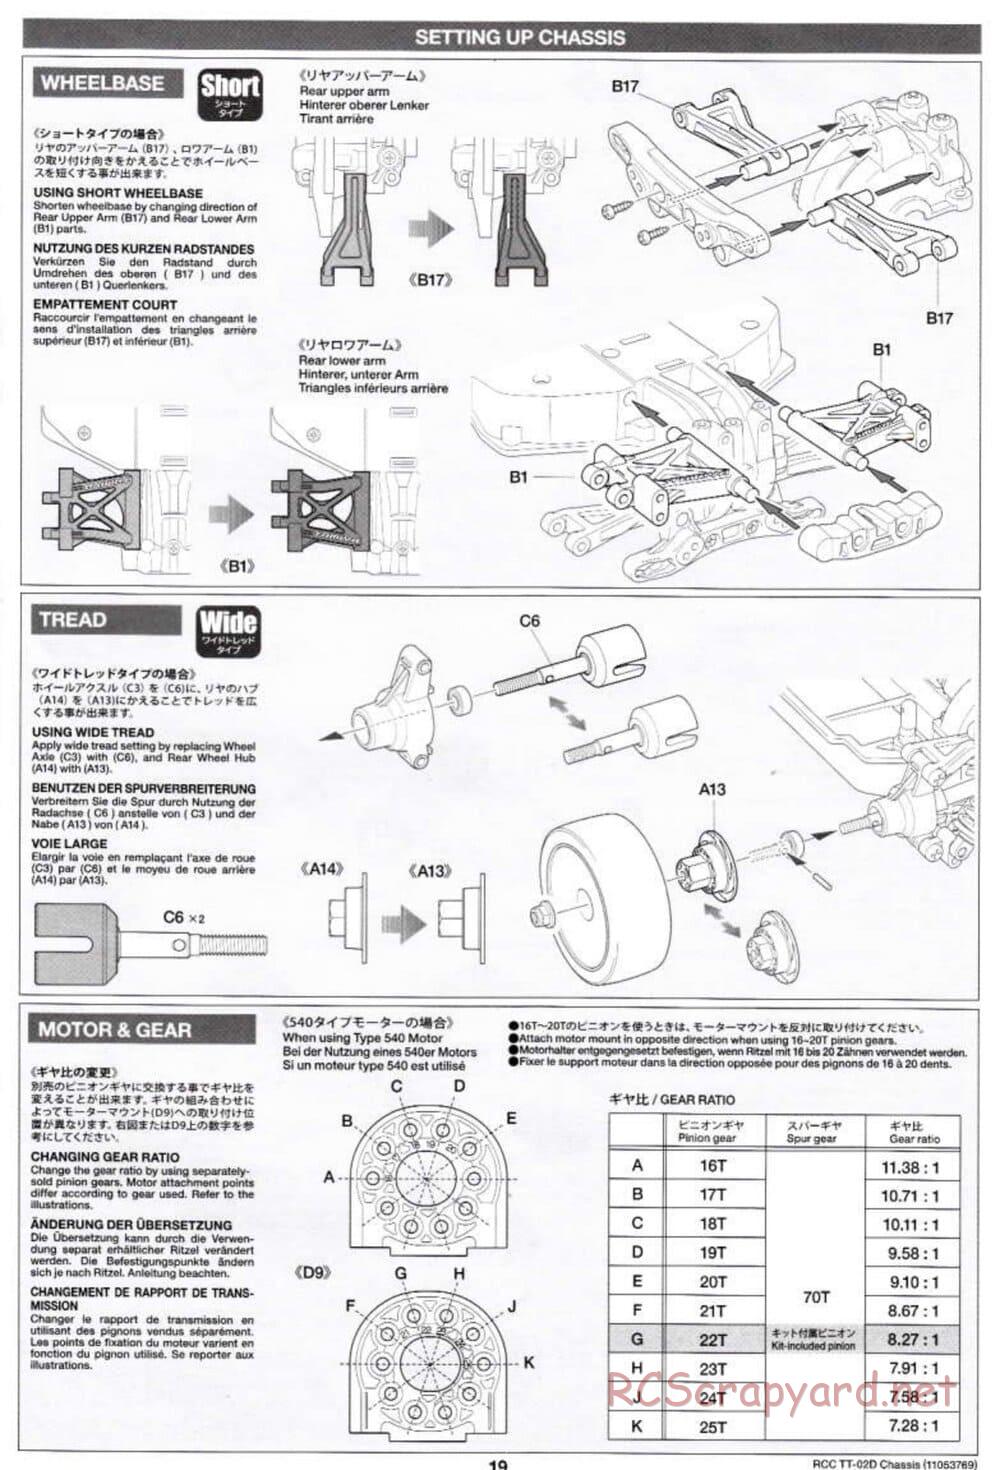 Tamiya - TT-02D Chassis - Manual - Page 19